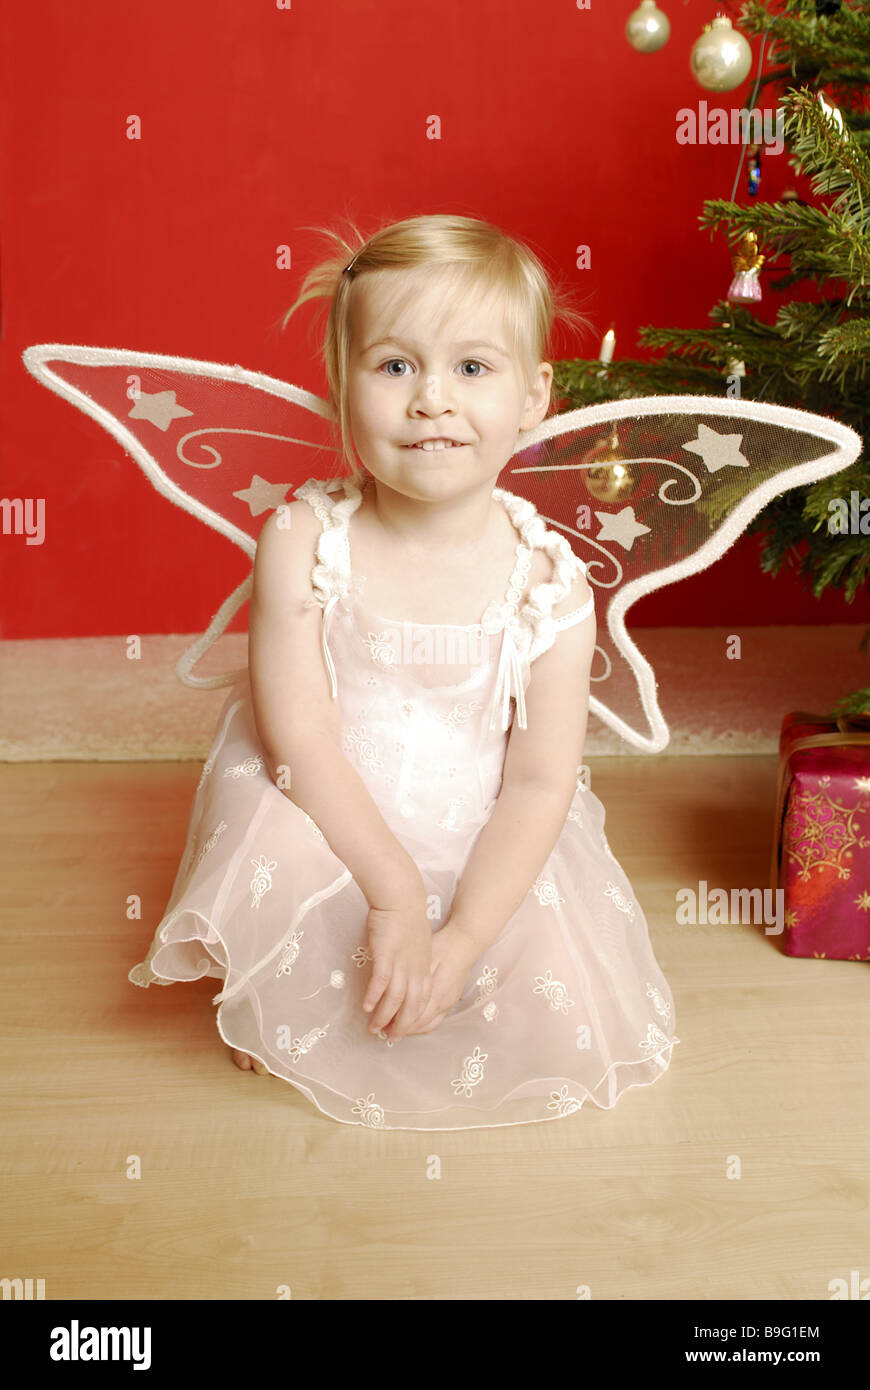 Weihnachten Mädchen Verkleidung Engel Lächeln Serie Menschen Kind Kleinkind  Kleid Engel Flügel Weihnachten-Engel Engels-Outfit Natürlichkeit  Stockfotografie - Alamy